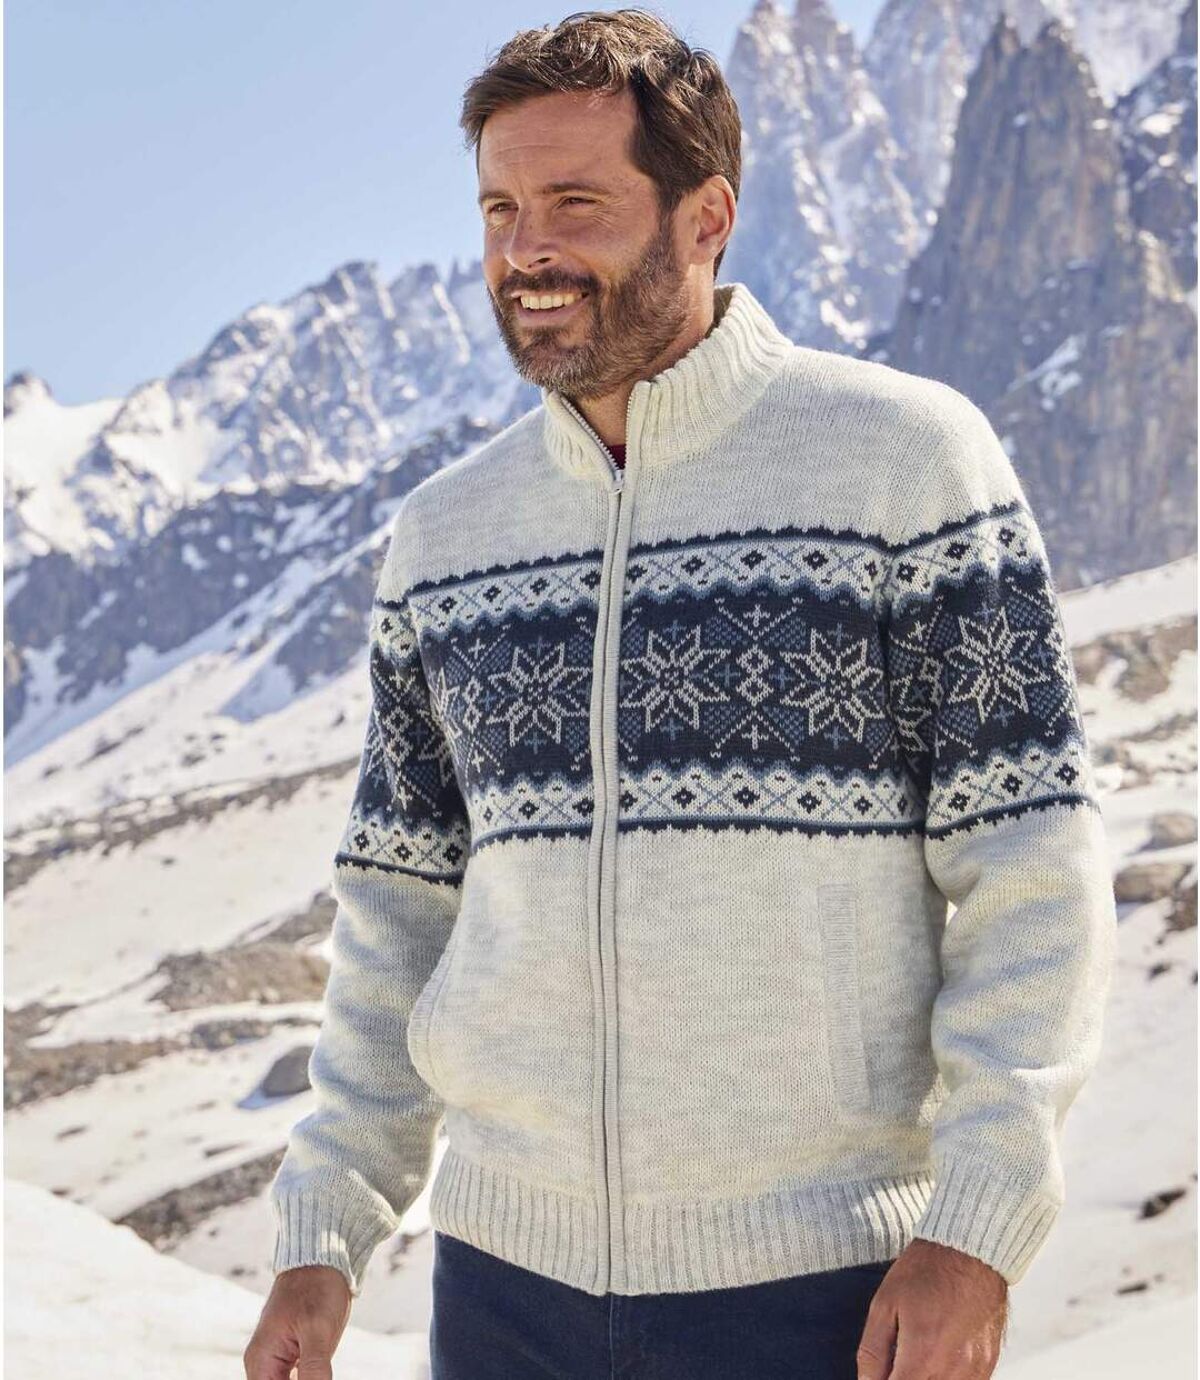 Men's Knit Jacket with Fleece Lining - Ecru Atlas For Men